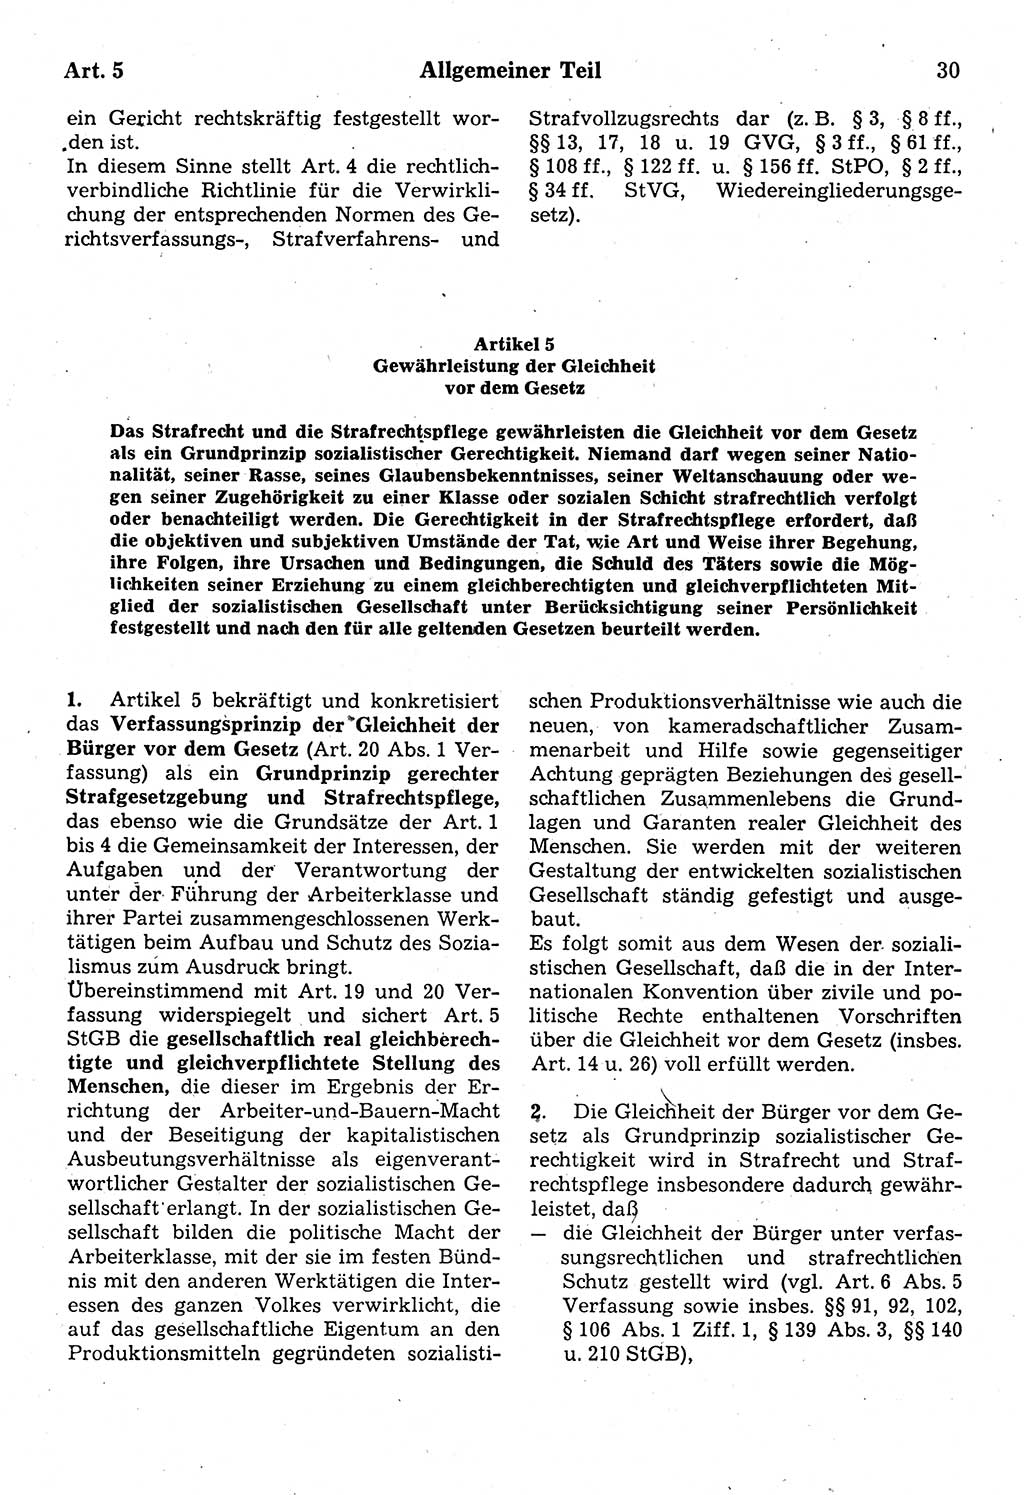 Strafrecht der Deutschen Demokratischen Republik (DDR), Kommentar zum Strafgesetzbuch (StGB) 1987, Seite 30 (Strafr. DDR Komm. StGB 1987, S. 30)